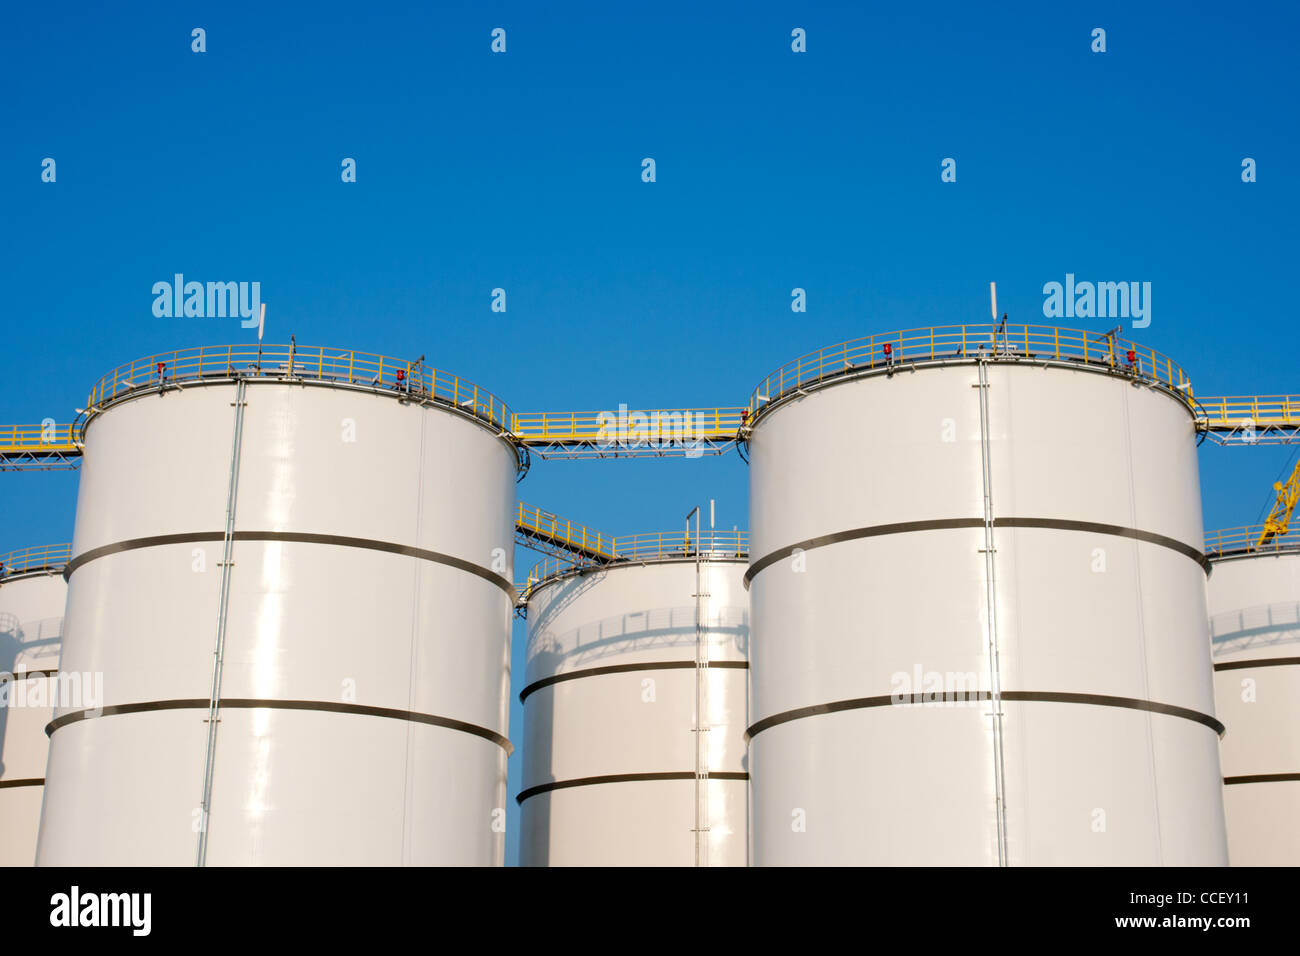 Oil storage tanks Stock Photo